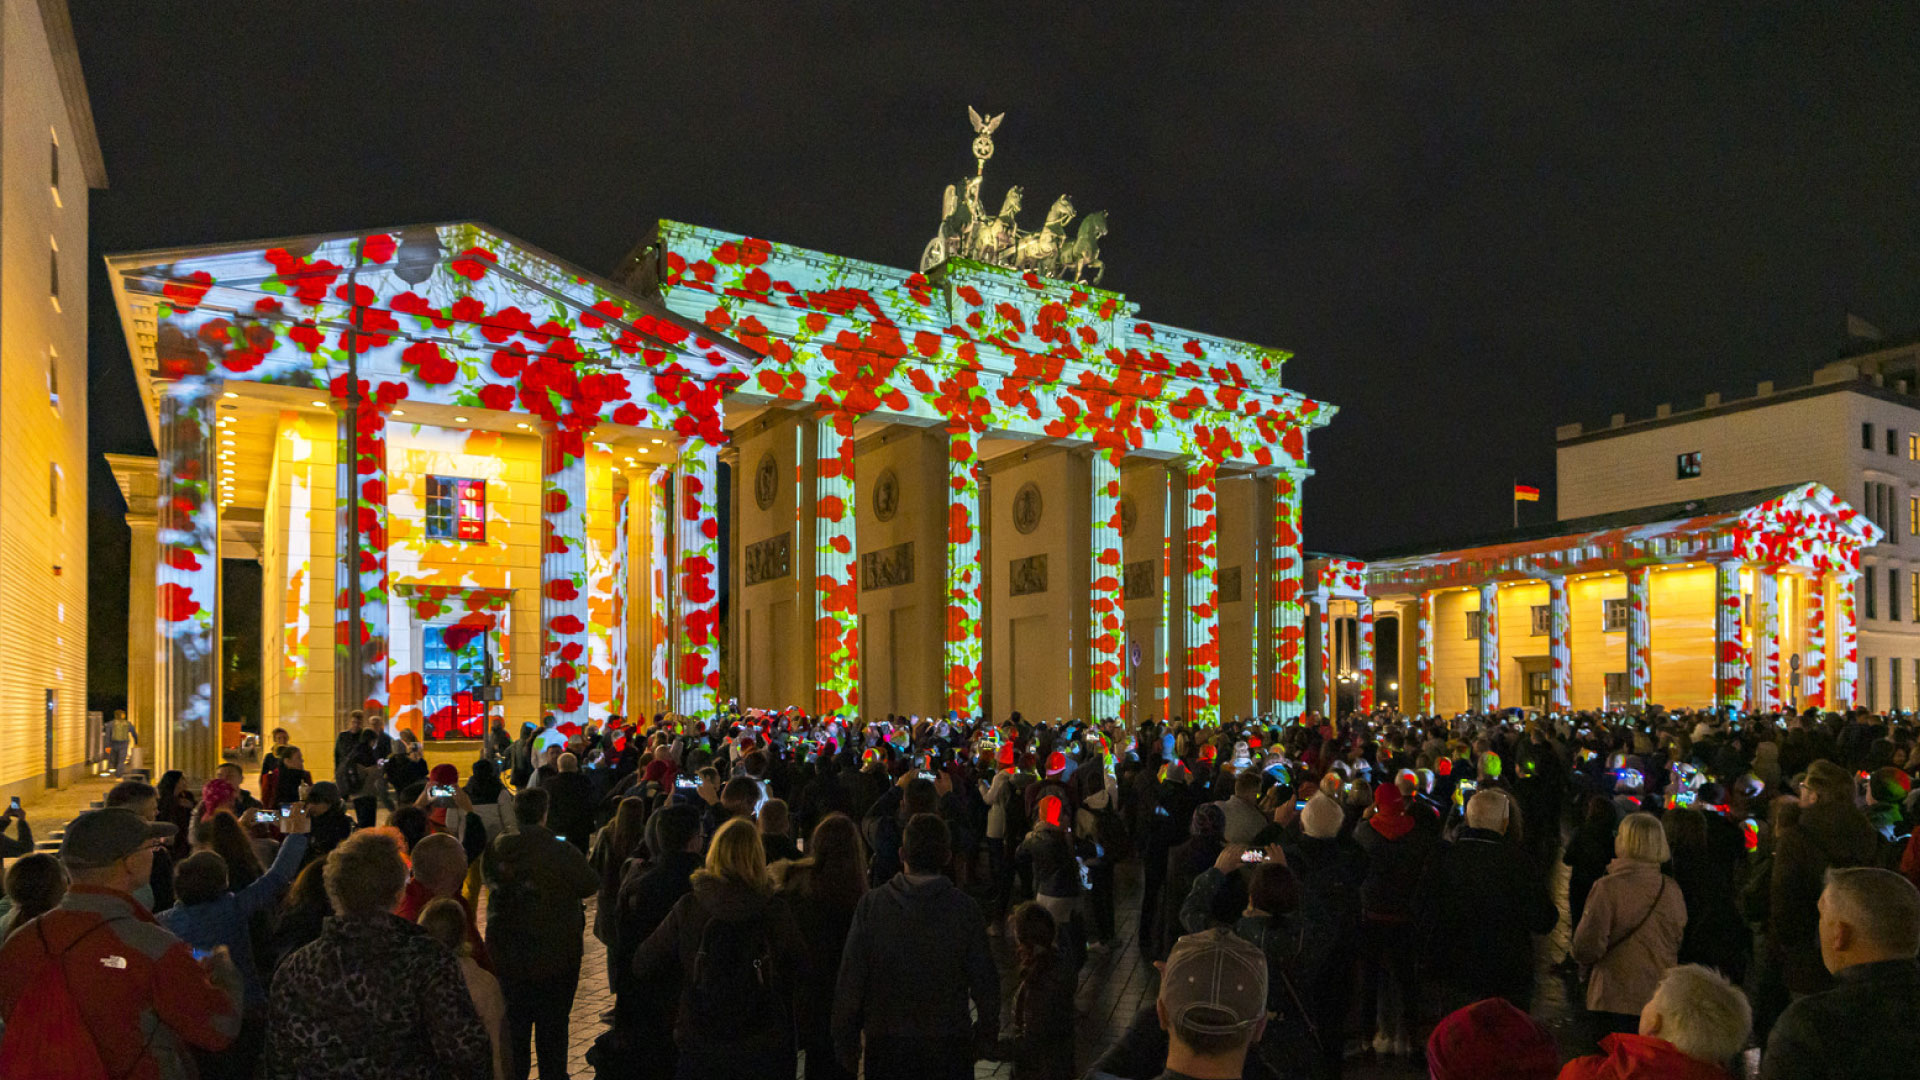 PRG a fourni plus de 20 projecteurs pour la réalisation de ces illuminations lors du Festival of Lights de Berlin, dans des lieux très divers.